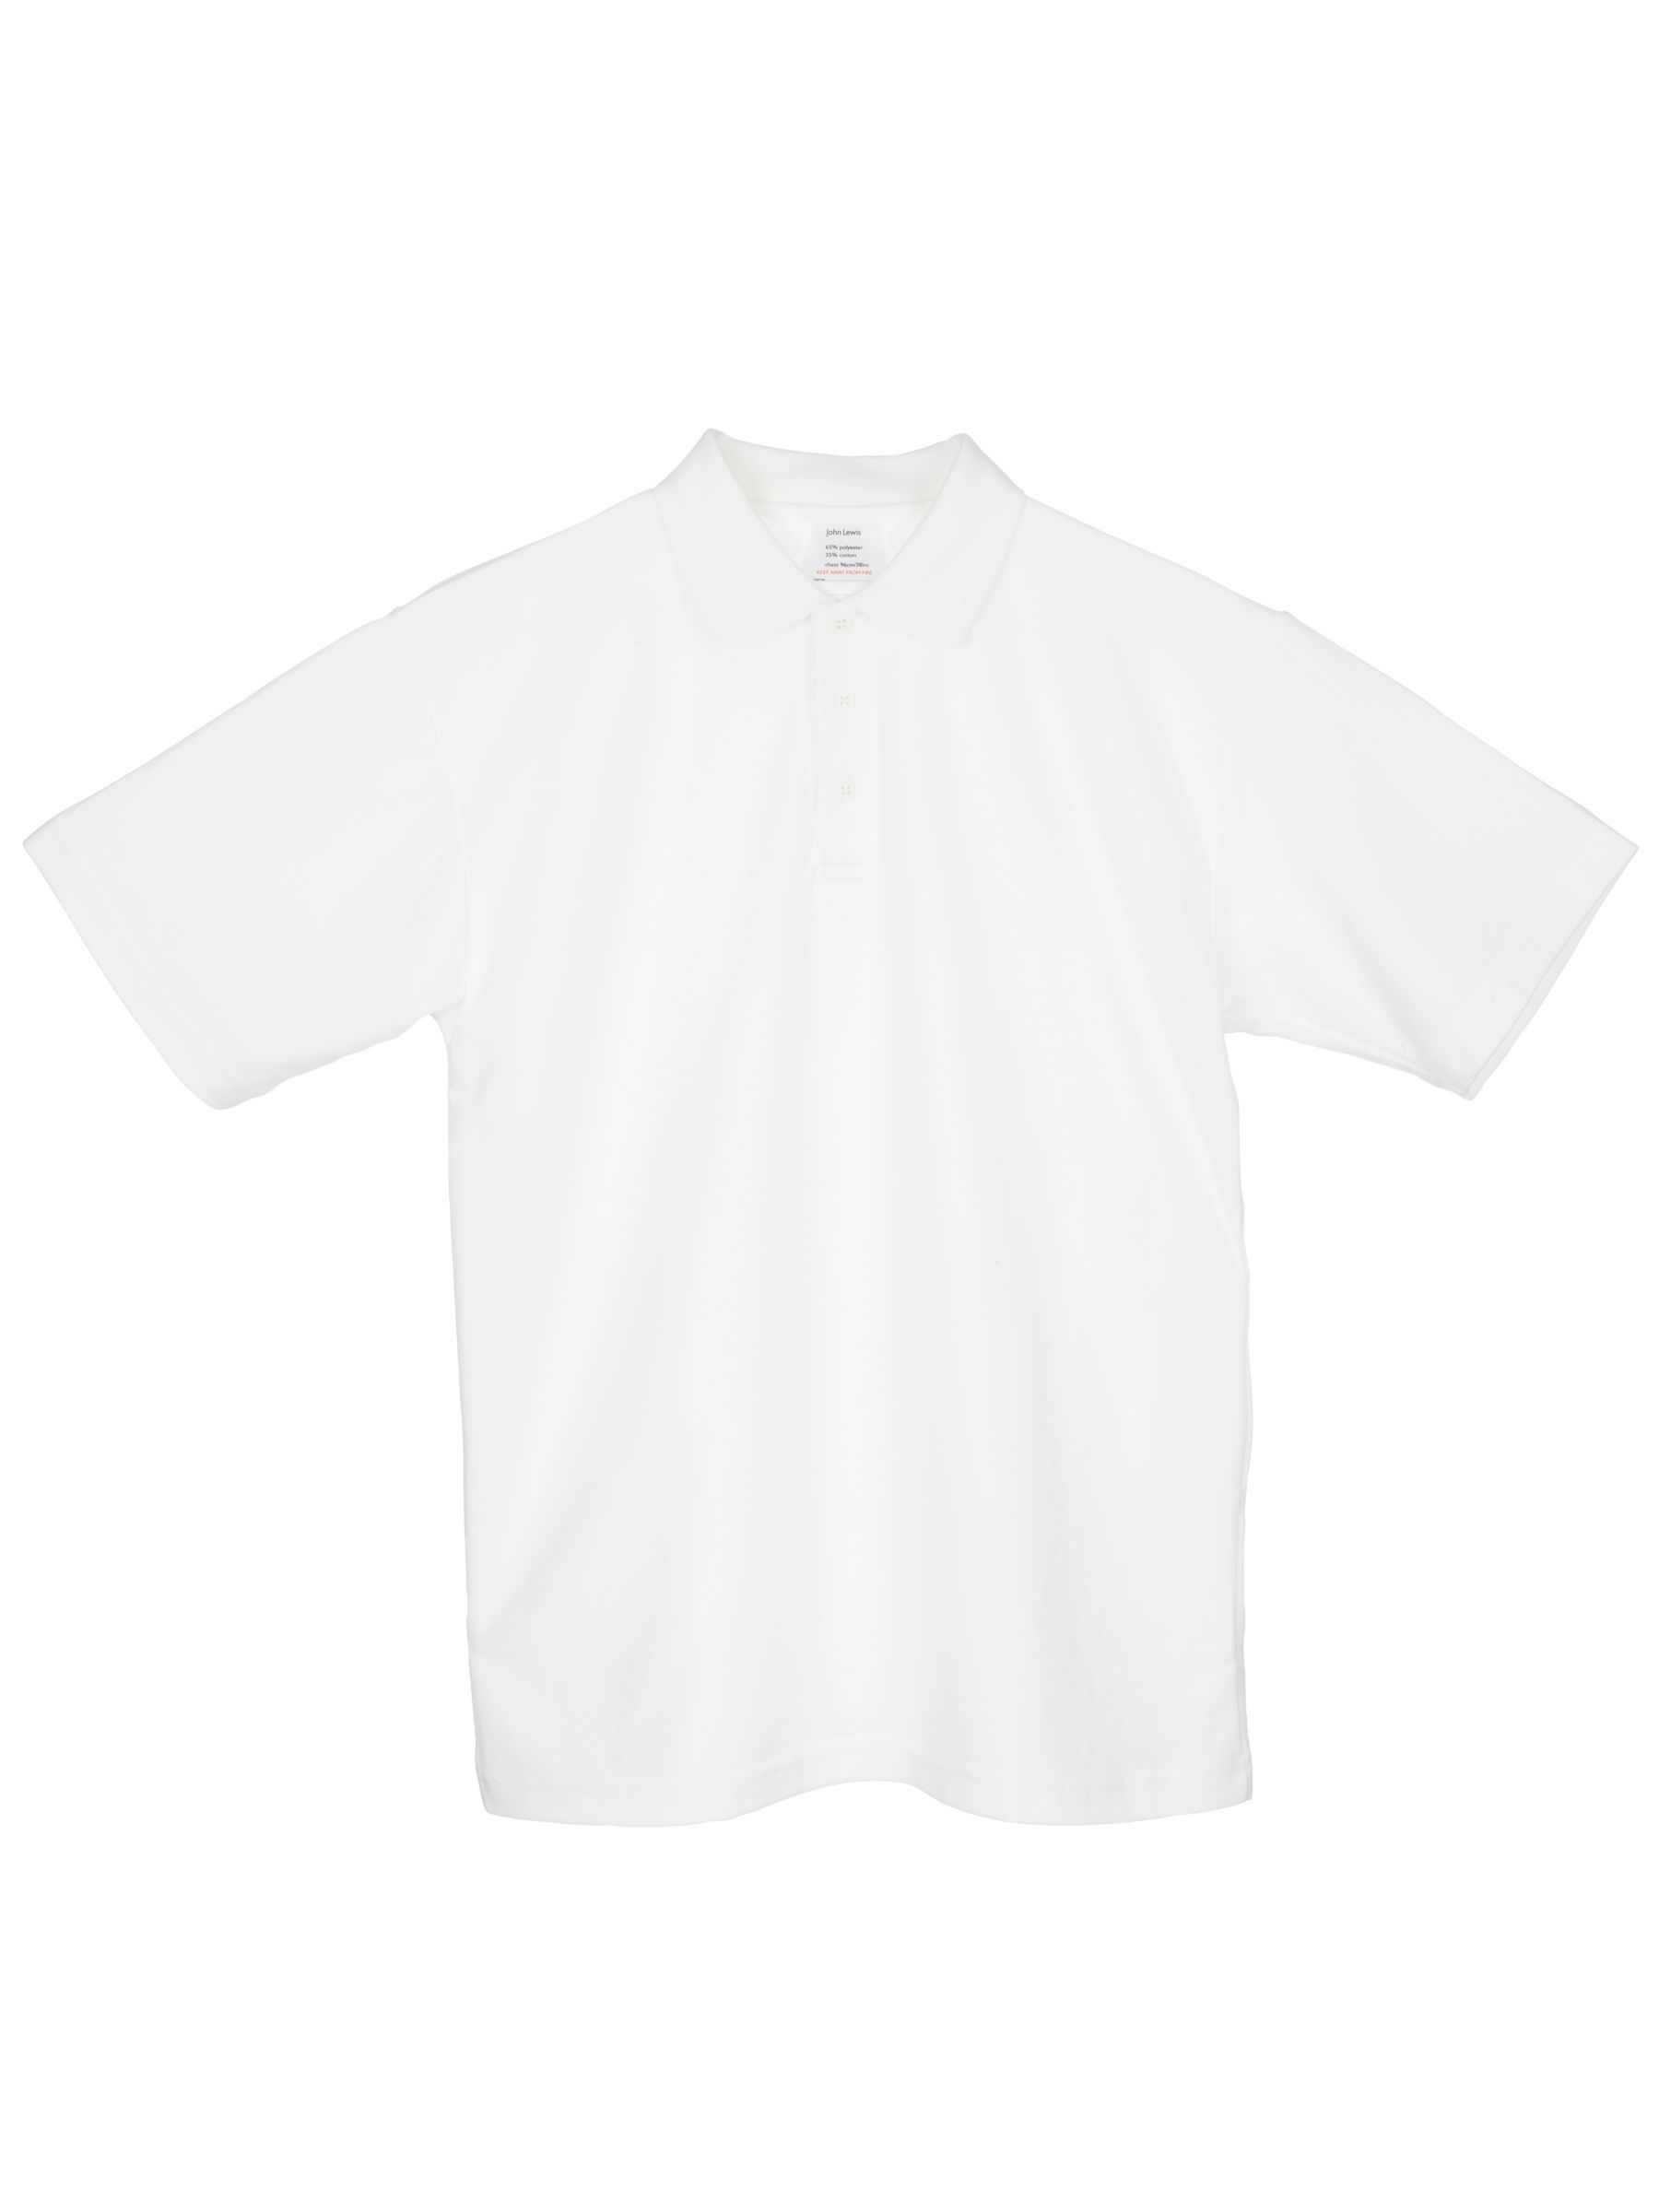 John Lewis Unisex Polo Shirt, White, Chest 30 (76cm), Pack of 2